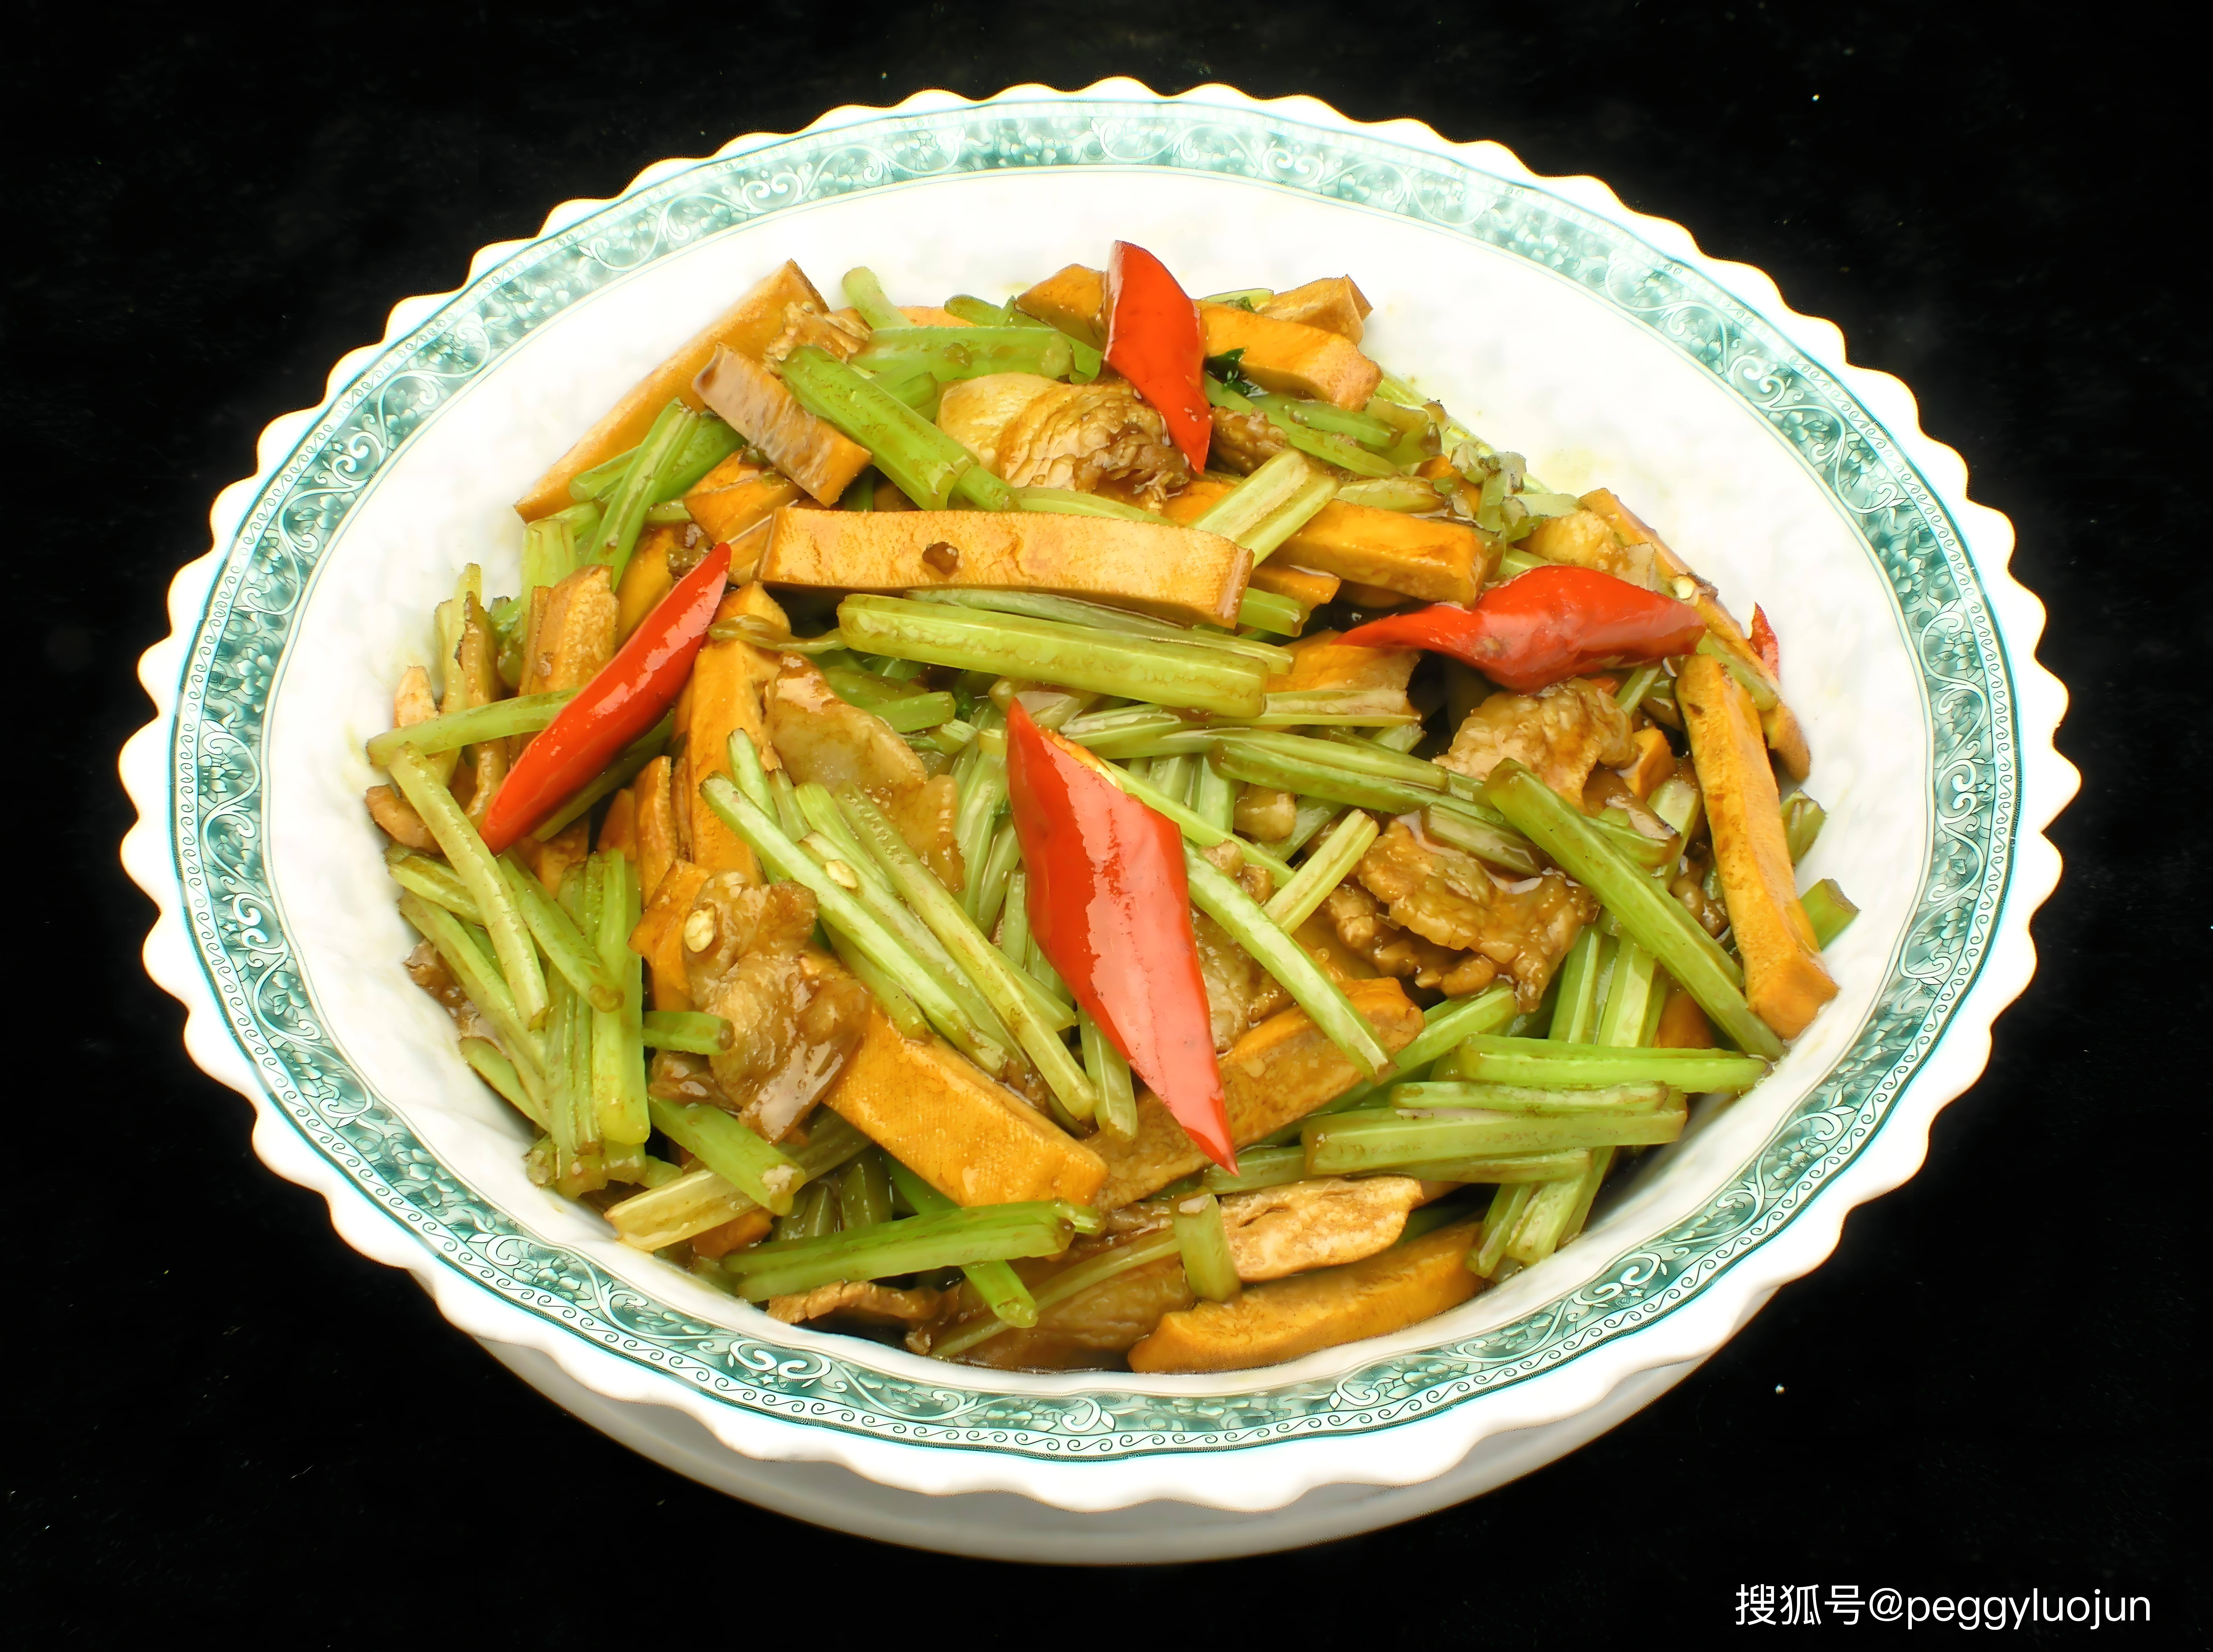 绿色美食速成:香干芹菜小炒,简单快速唤醒味蕾的清新盛宴!